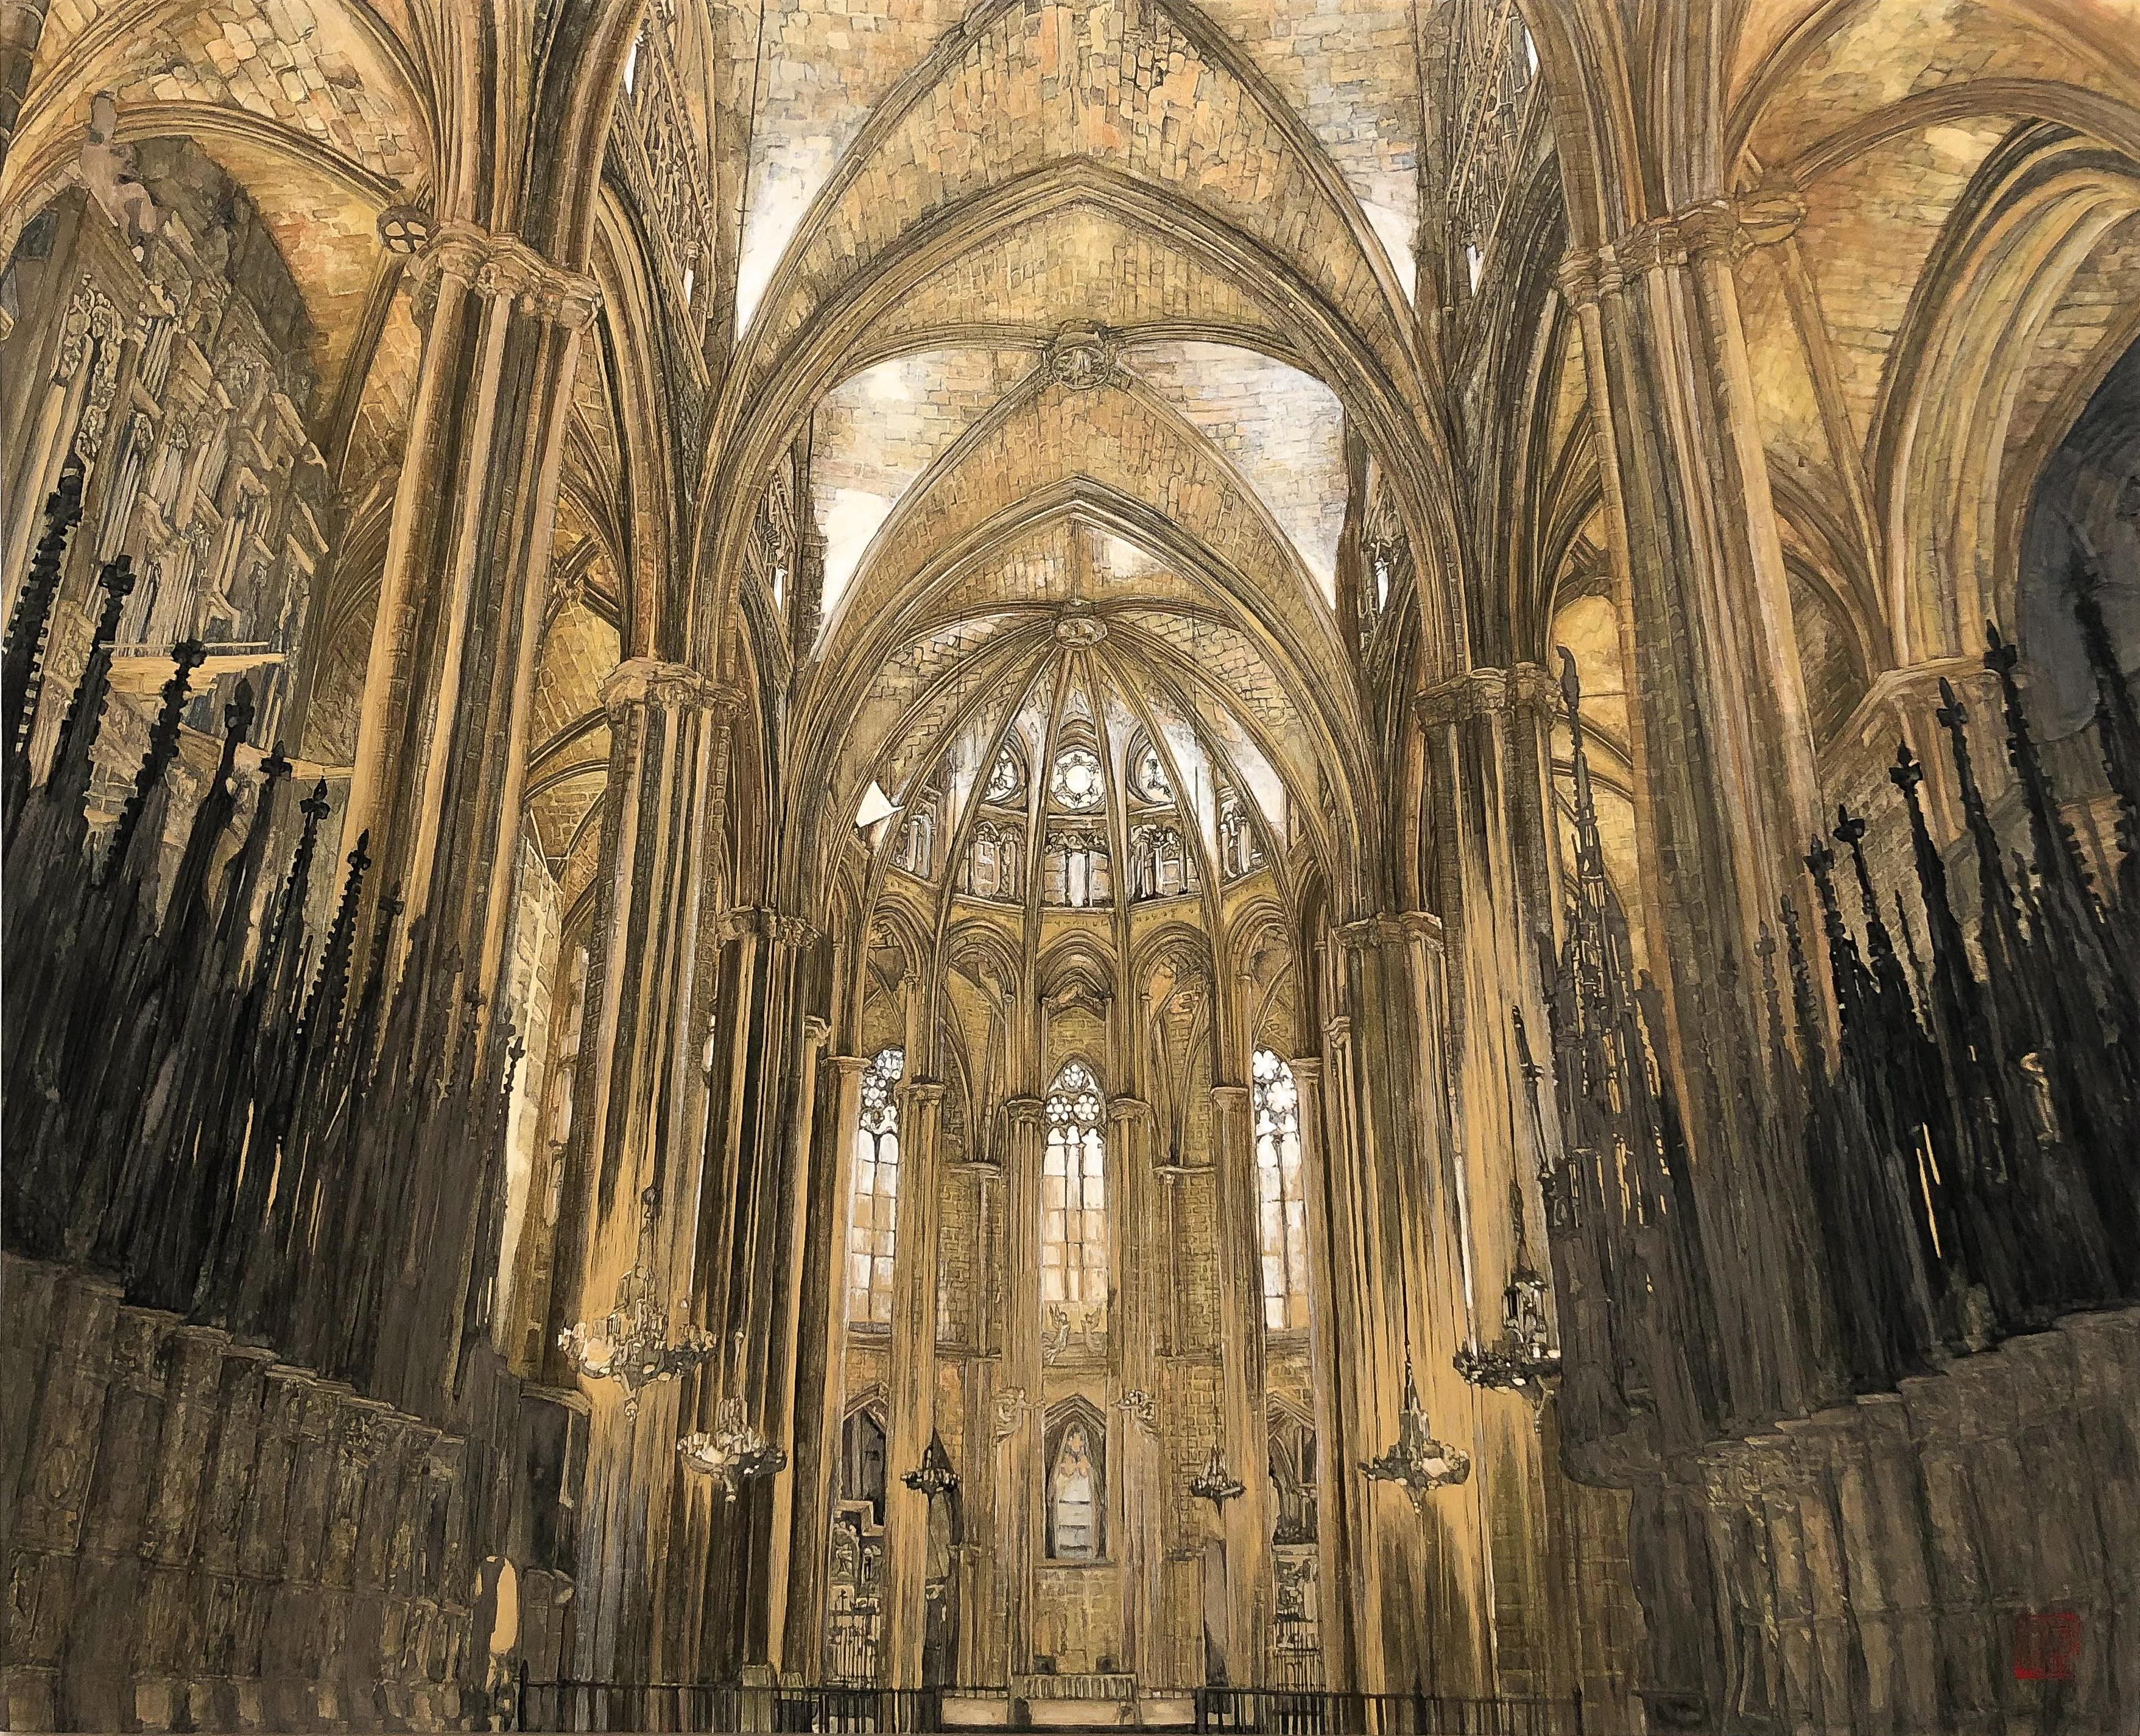 Maria Mitsumori Interior Painting – Barcelona- Kathedrale – 24 Karat Gold und Mineralien, Architektur, Gotik, Realismus